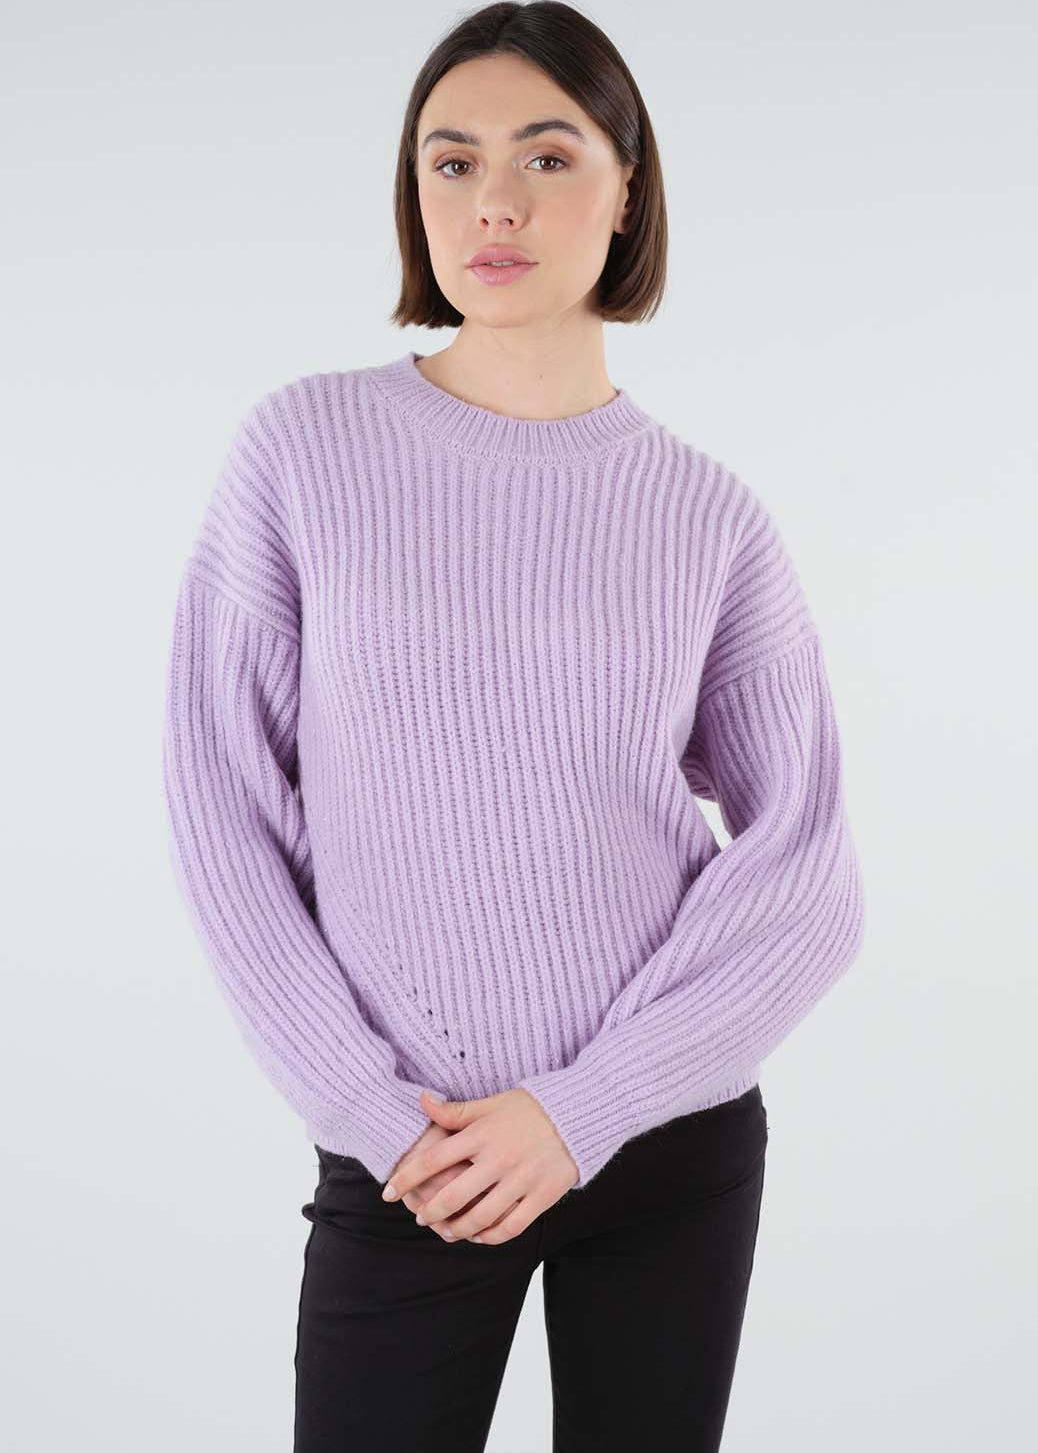 Deeluxe Happia Sweater - DressbarnSweaters & Hoodies